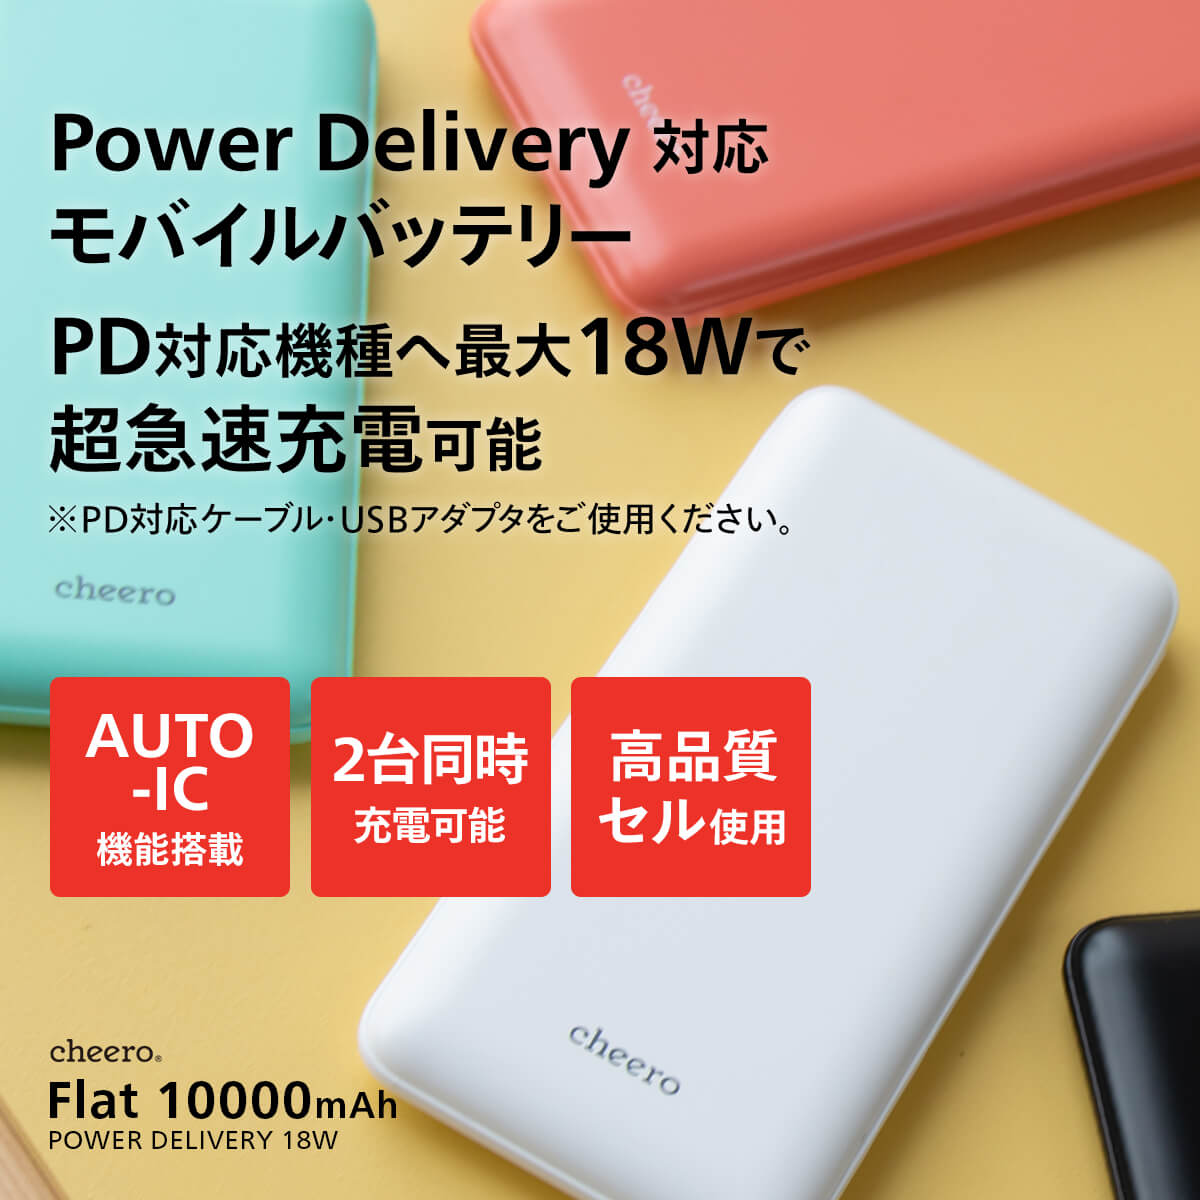 【販売終了】cheero Flat 10000mAh with Power Delivery 18W